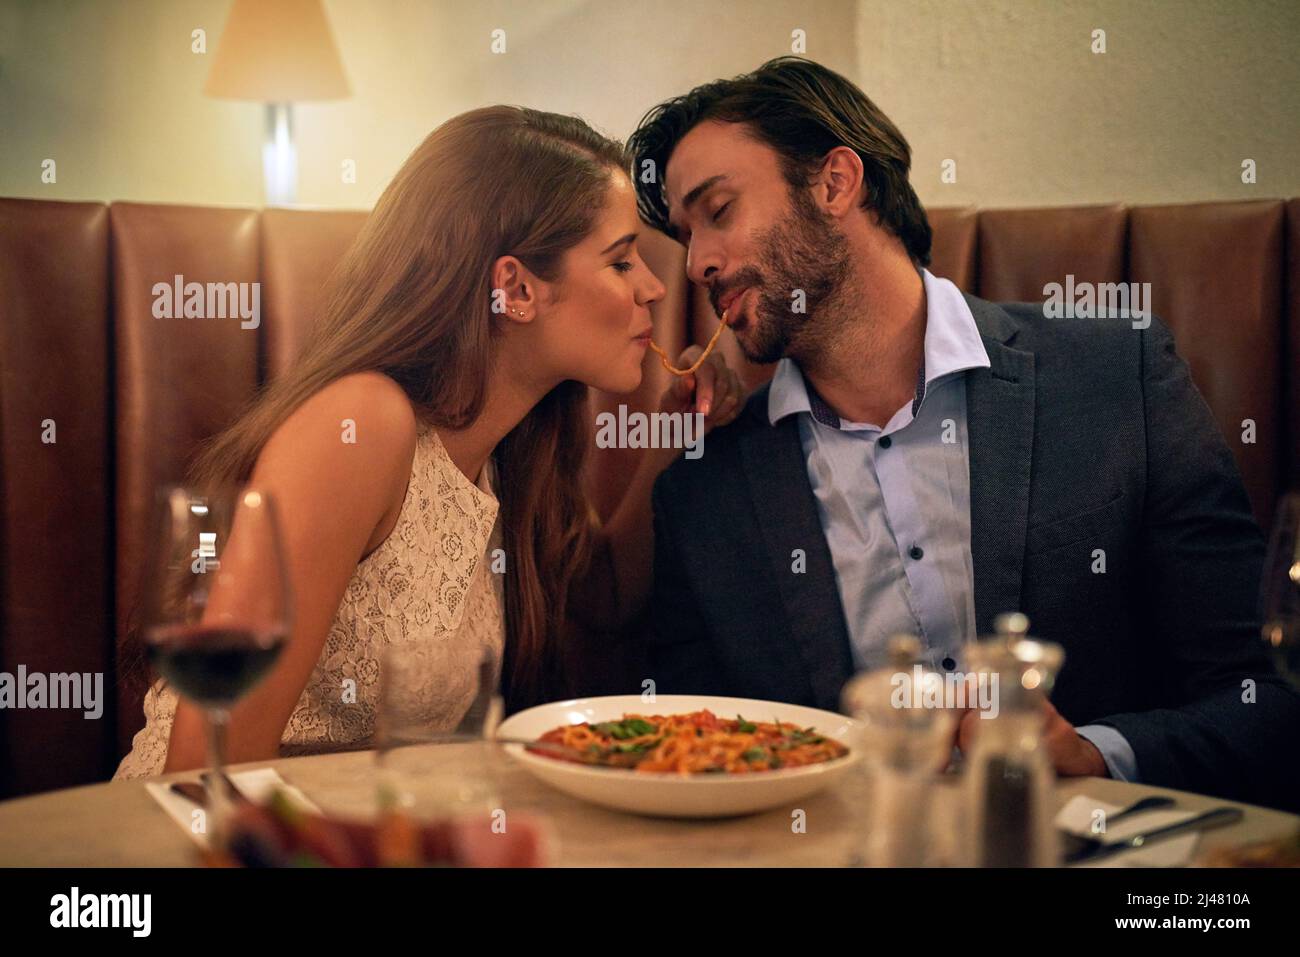 Les morsures d'amour. Photo d'un jeune couple partageant des spaghetti lors d'un dîner romantique dans un restaurant. Banque D'Images